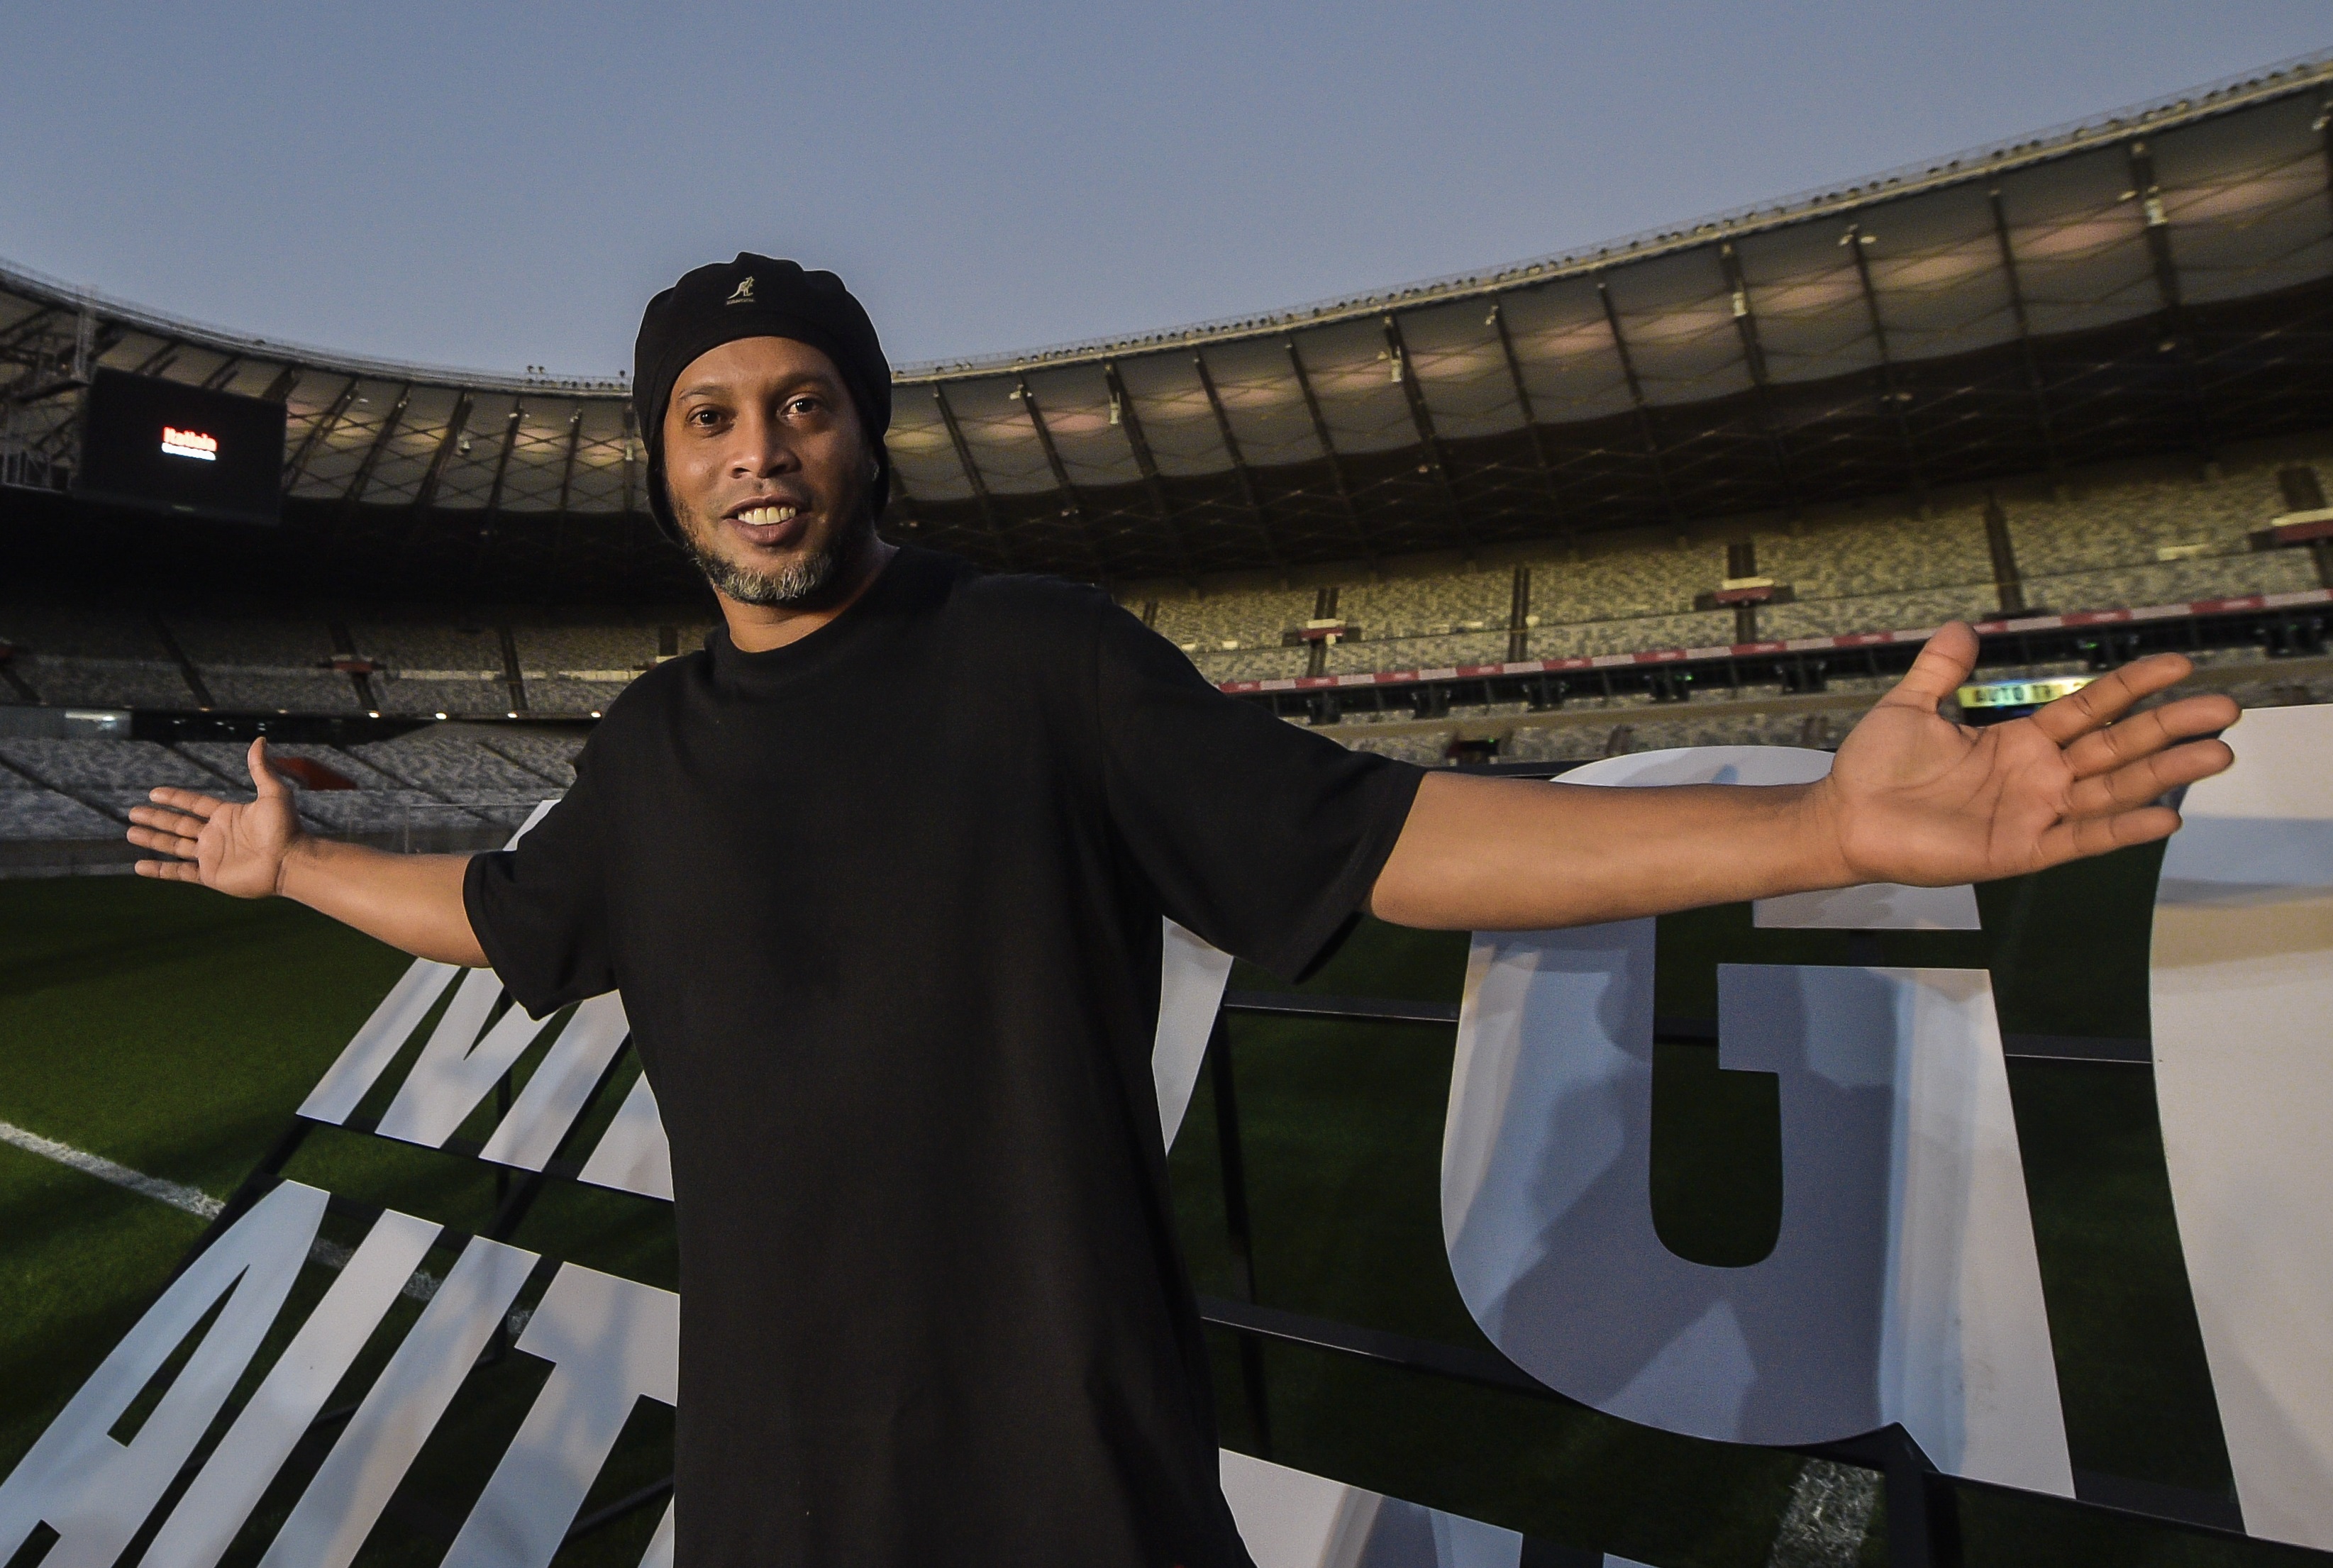 Scărița lui Ronaldinho din ultimul meci amical l-a făcut pe un coechipier să i se închine chiar pe teren